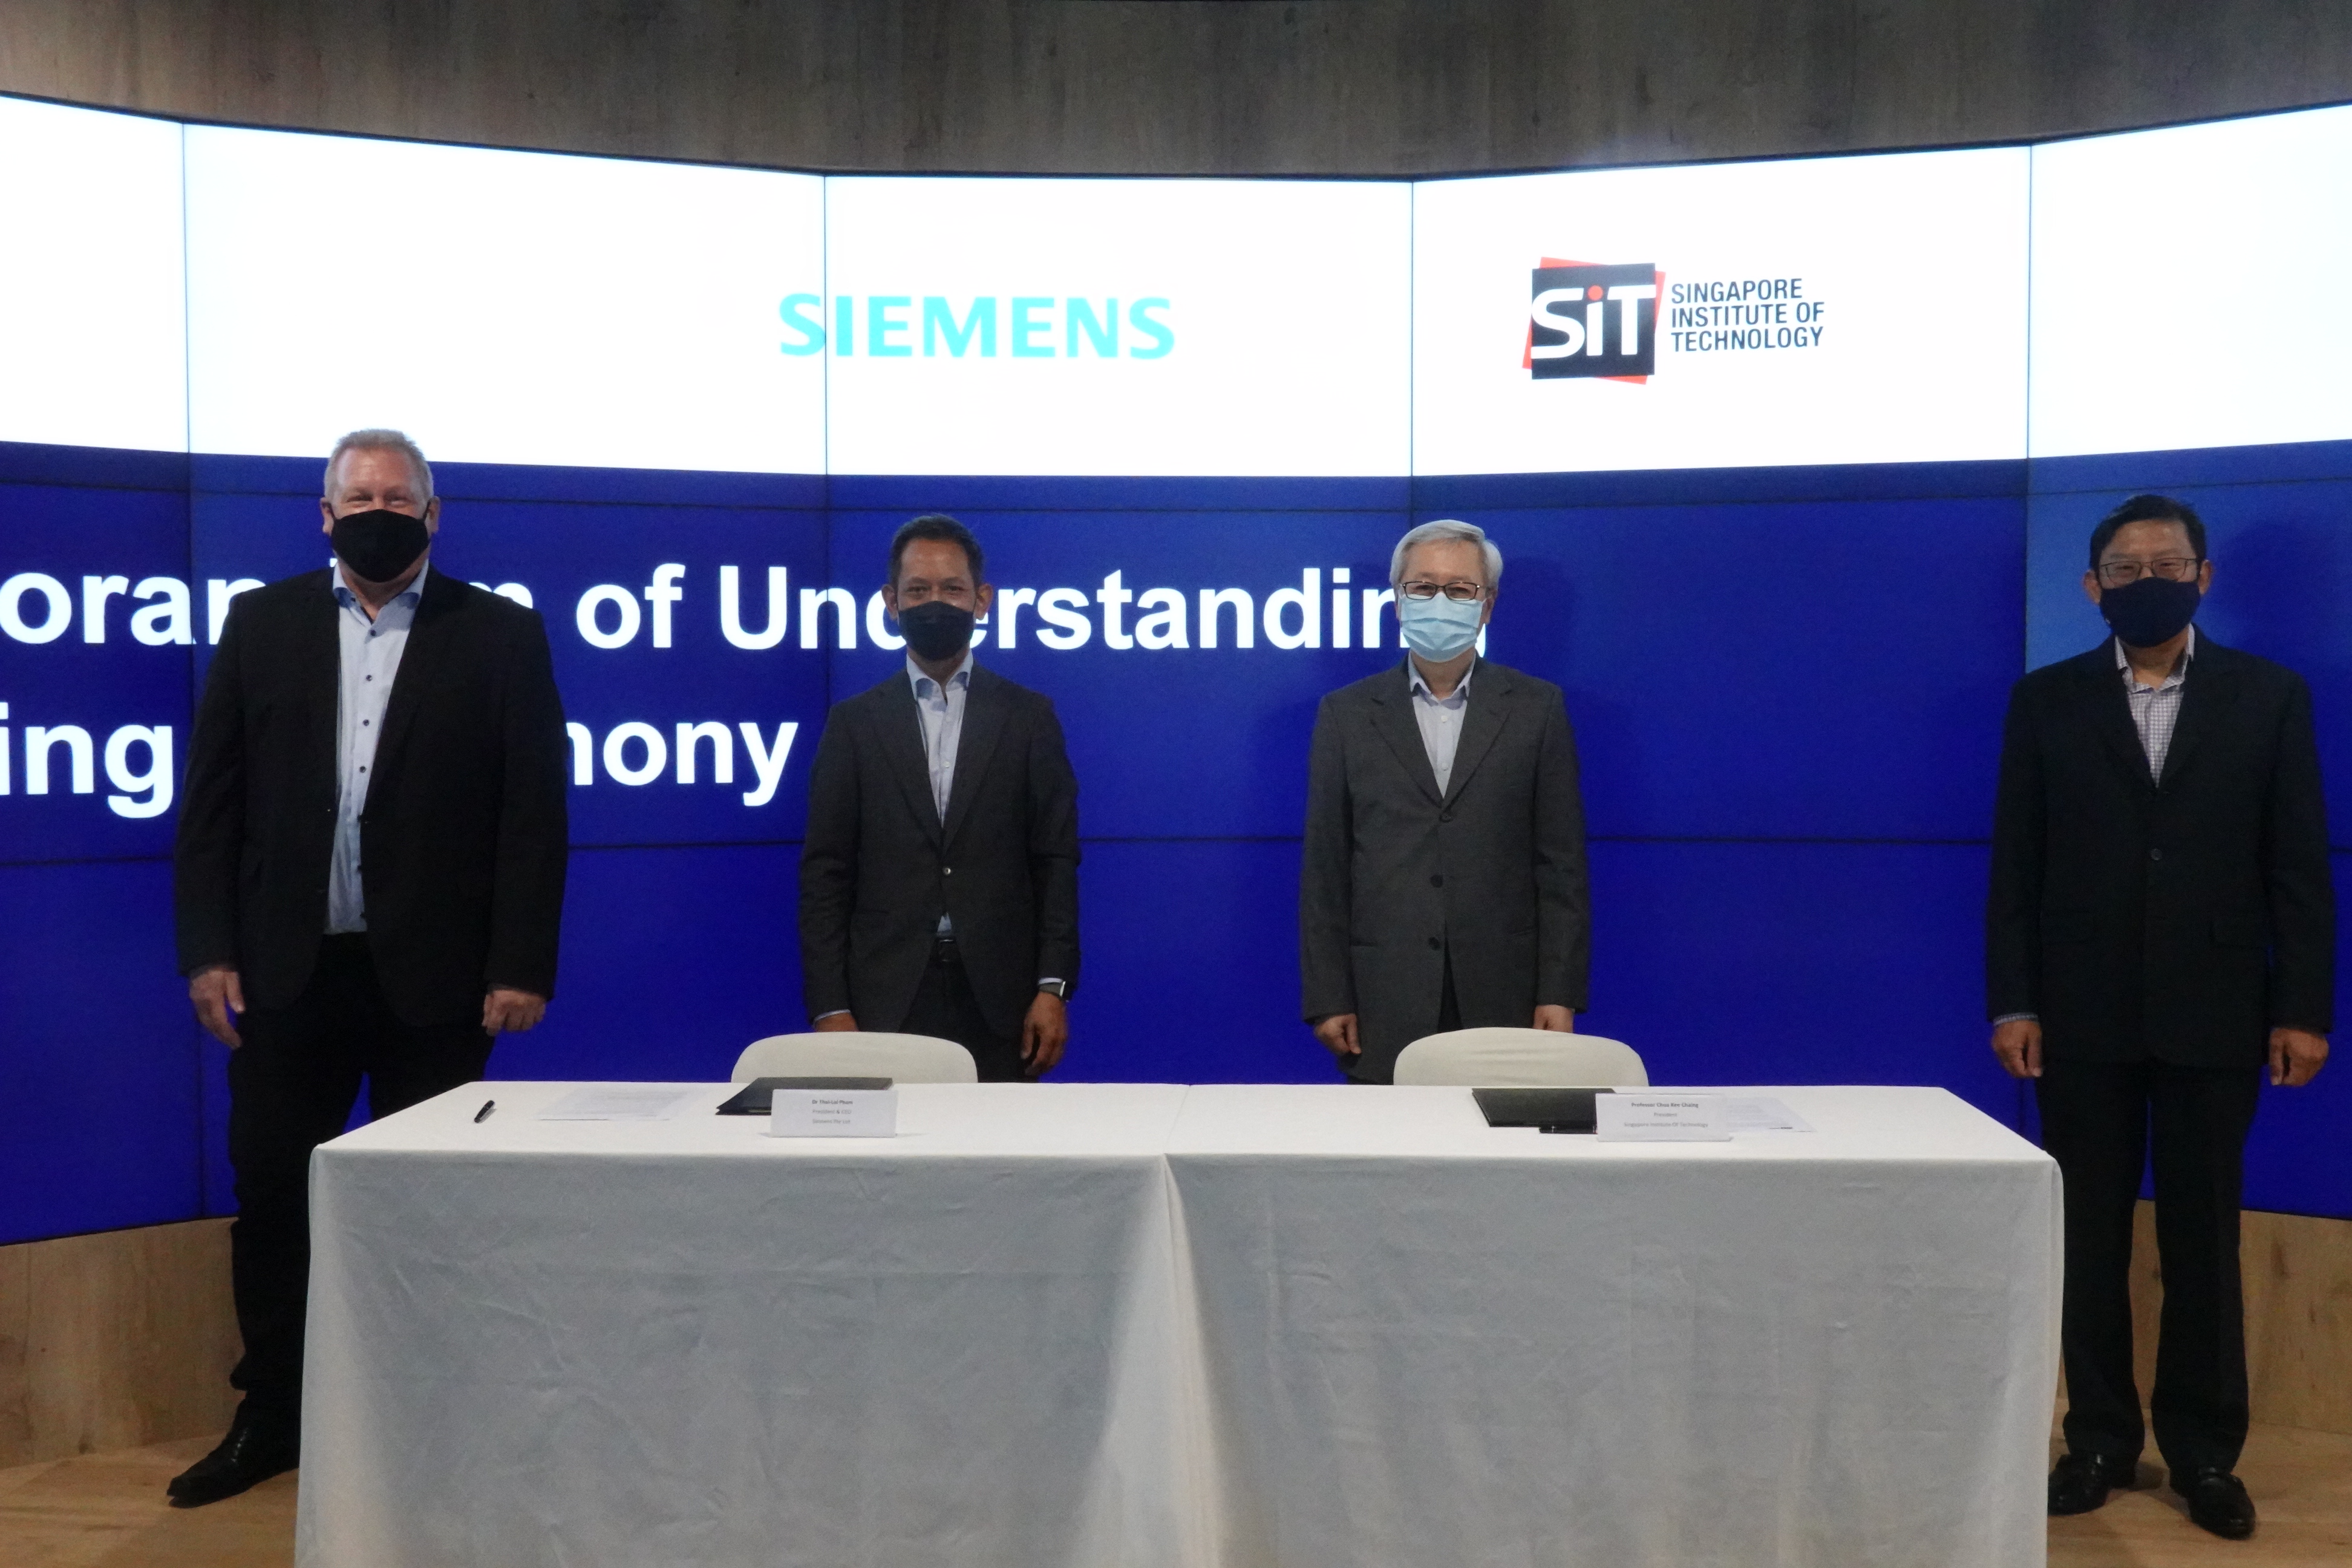 Siemens-SIT MOU signing